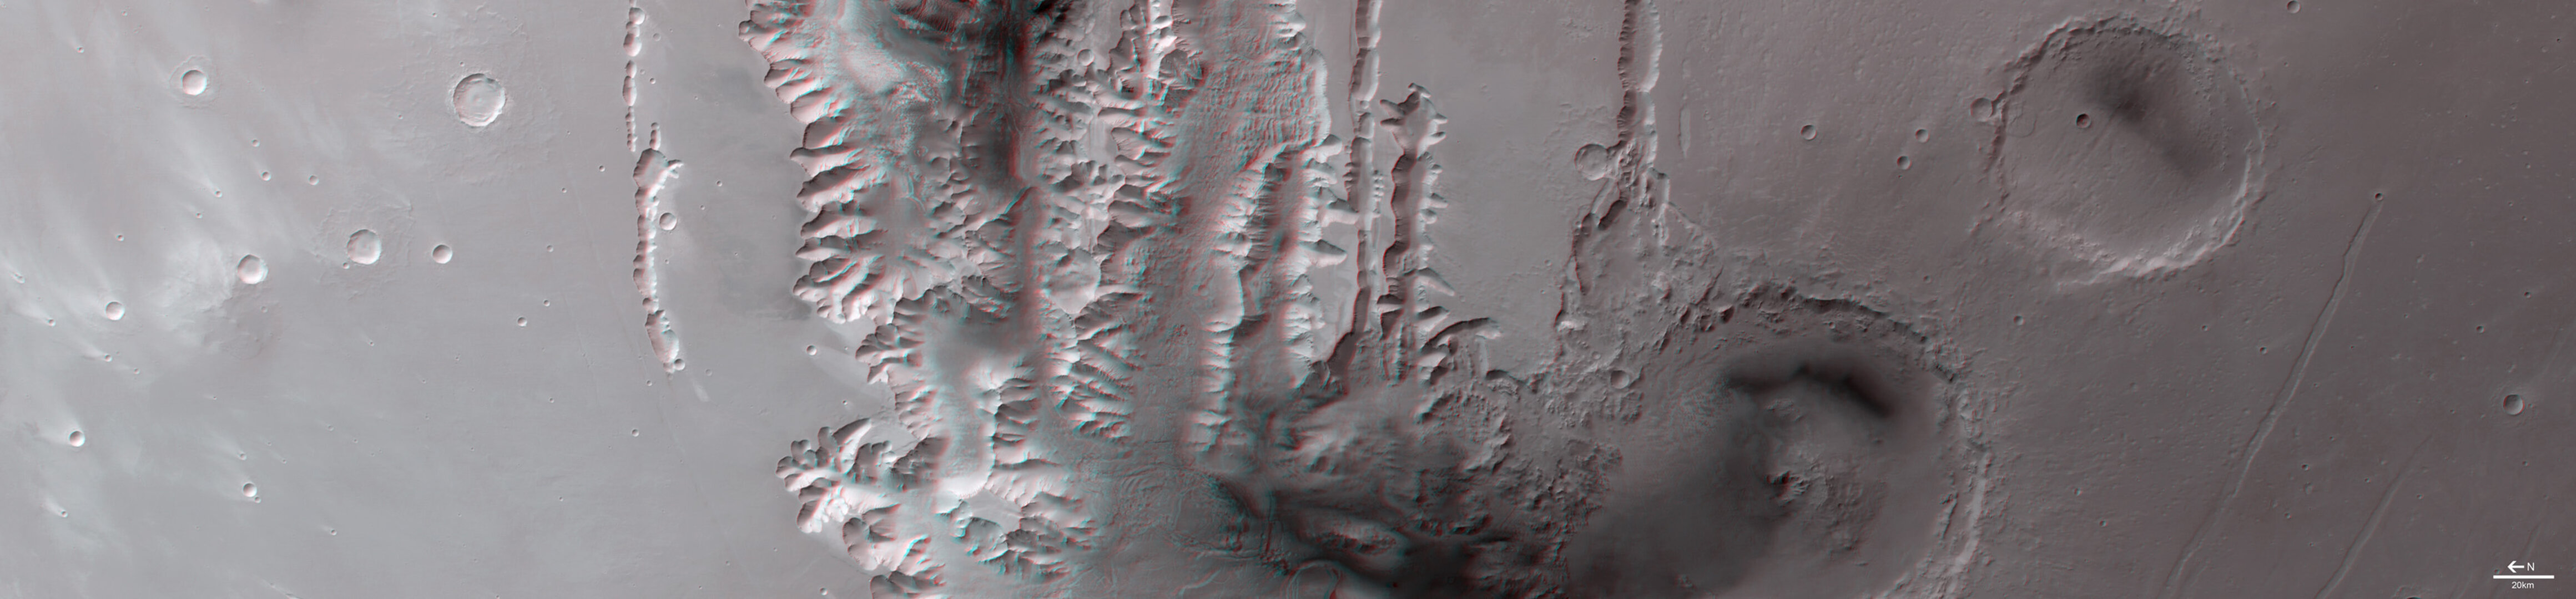 3D image of Tithonium Chasma